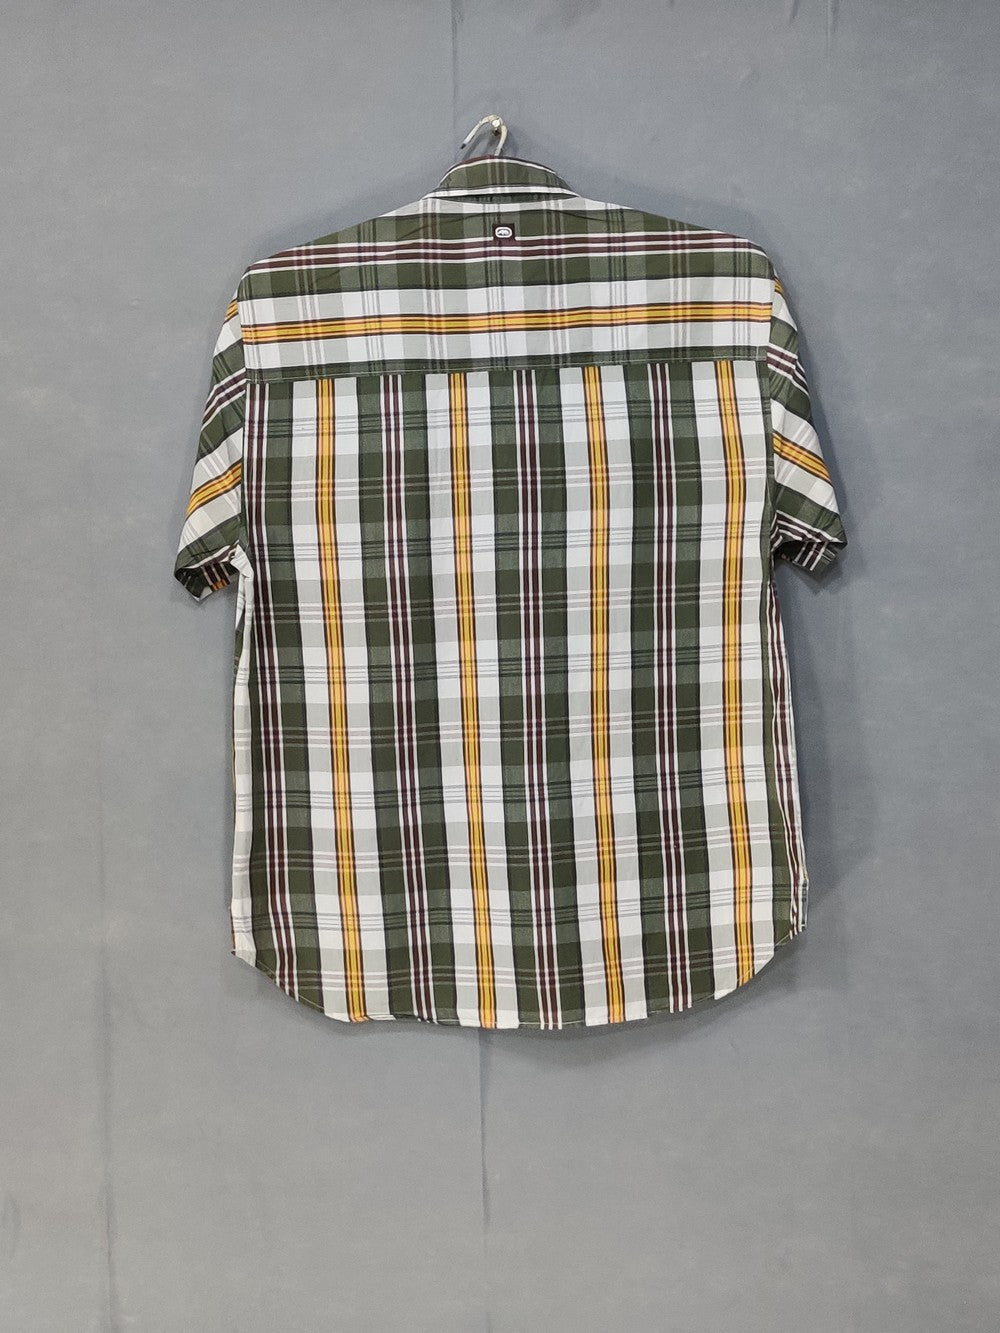 Ecko Unlted Branded Original Cotton Shirt For Men